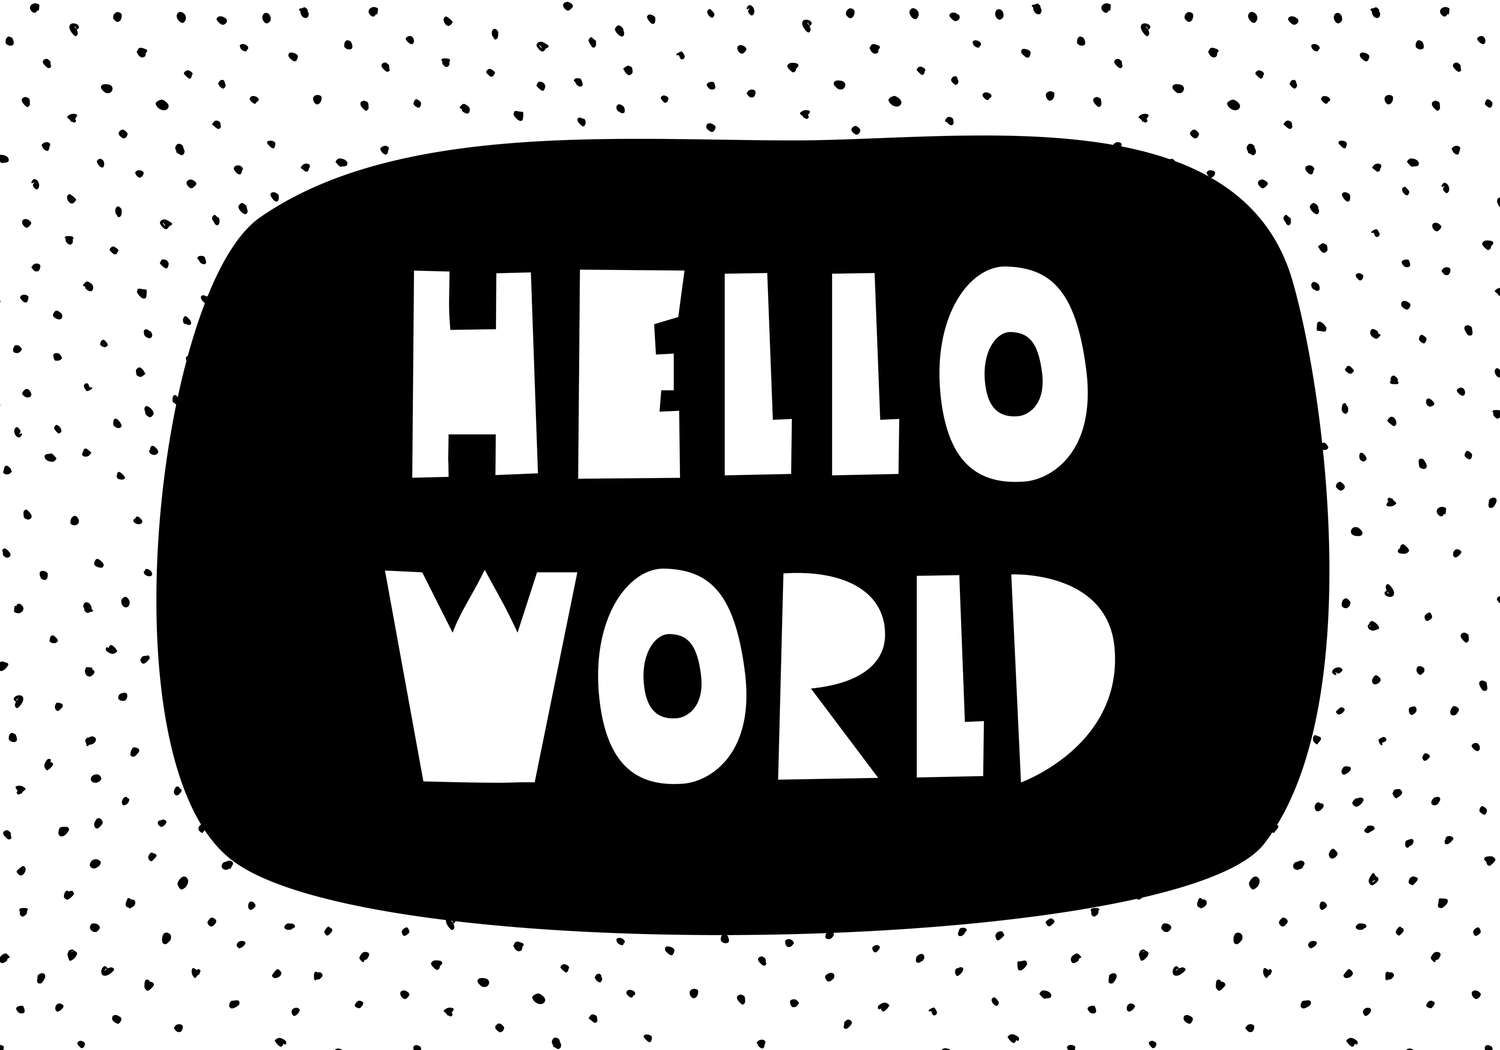             Fotomural para habitación infantil con letras "Hello World" - tejido sin tejer texturizado
        